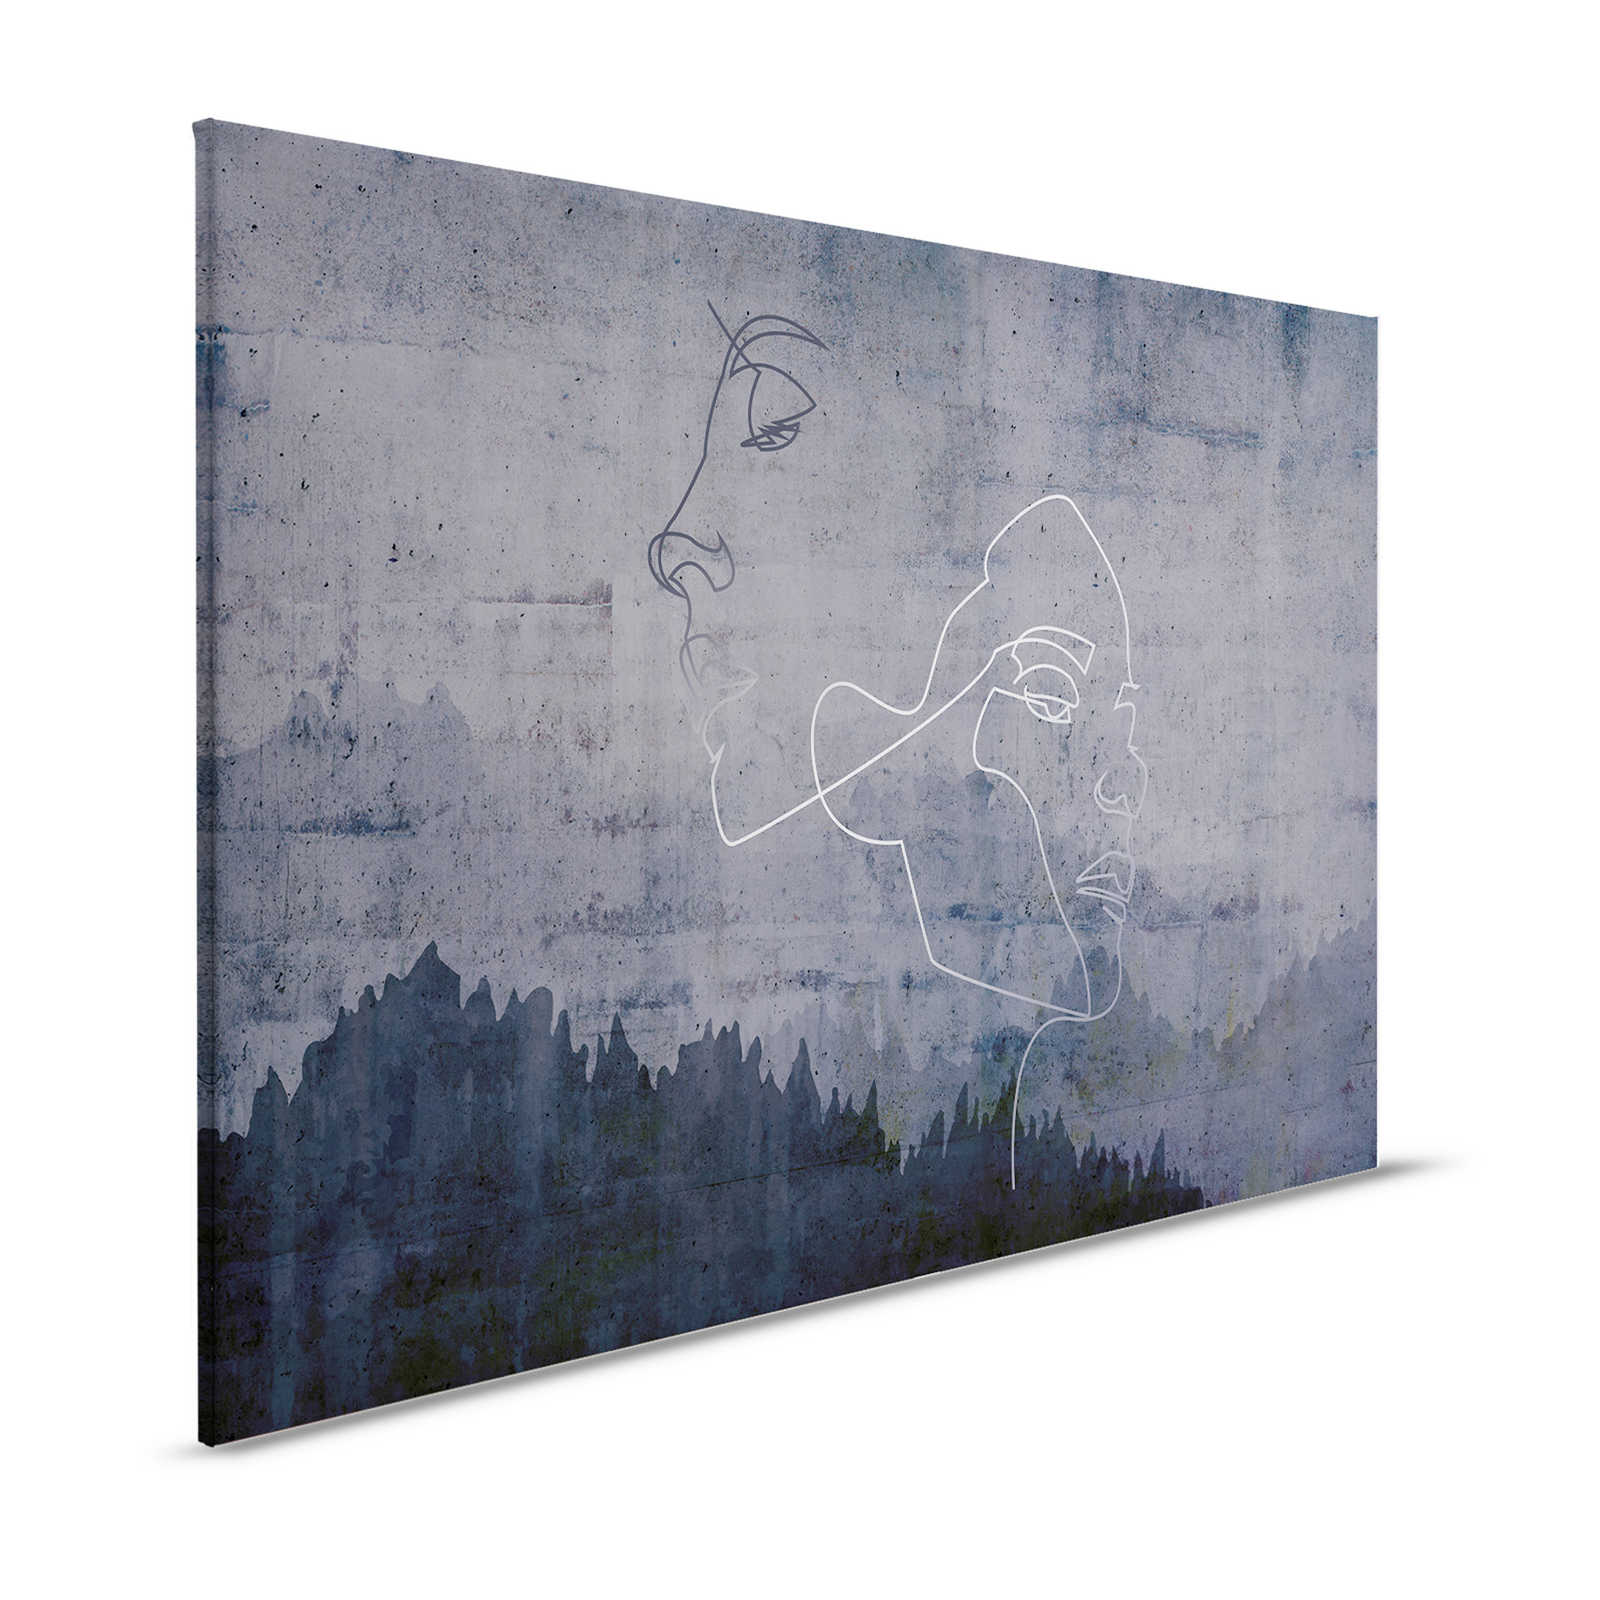 Canvas schilderij antraciet betonlook & zilveren lijn design - 1.20 m x 0.80 m
